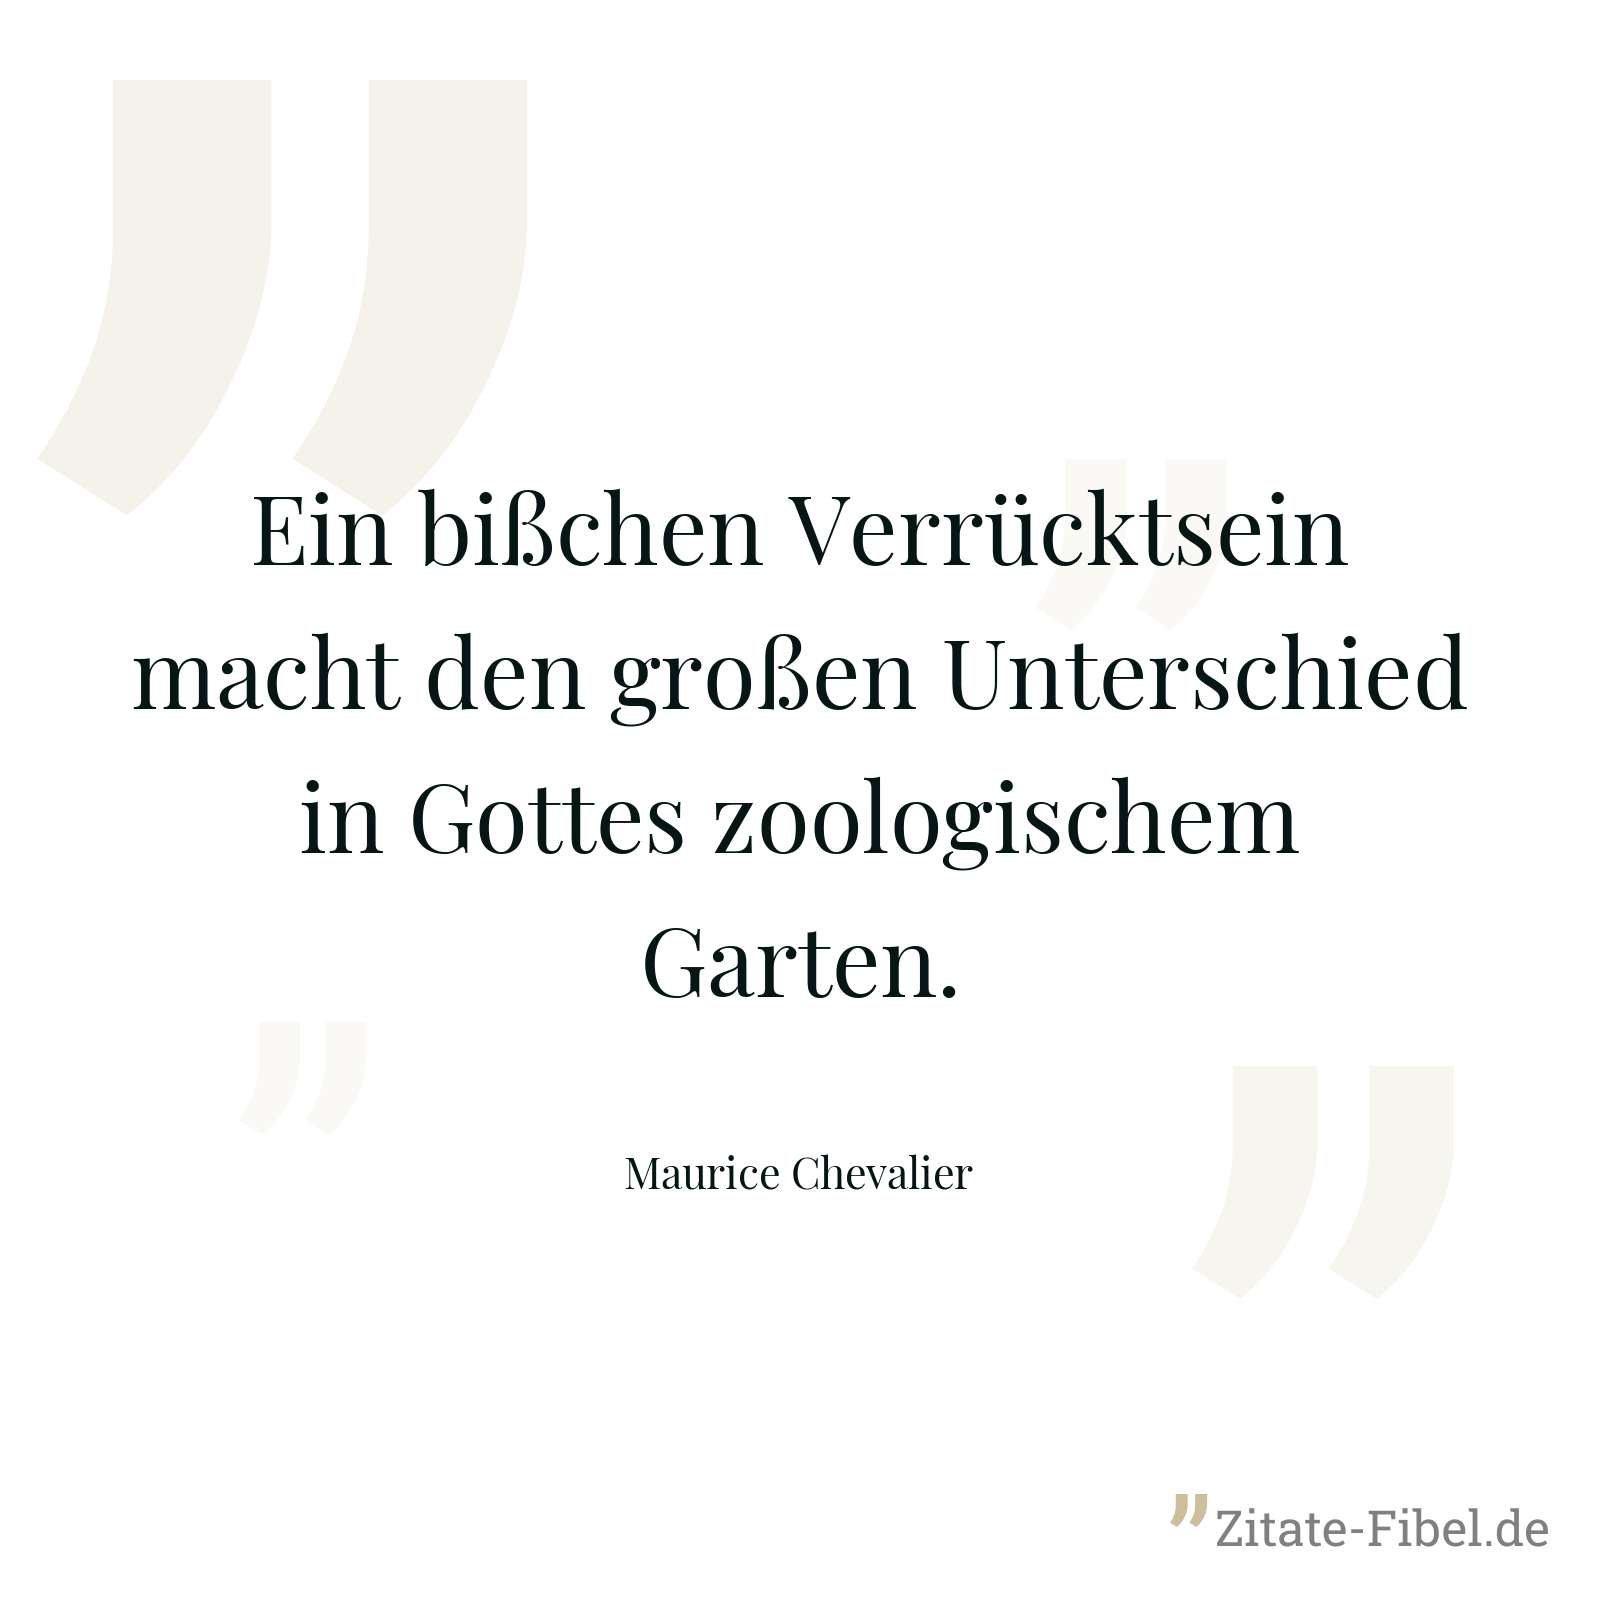 Ein bißchen Verrücktsein macht den großen Unterschied in Gottes zoologischem Garten. - Maurice Chevalier